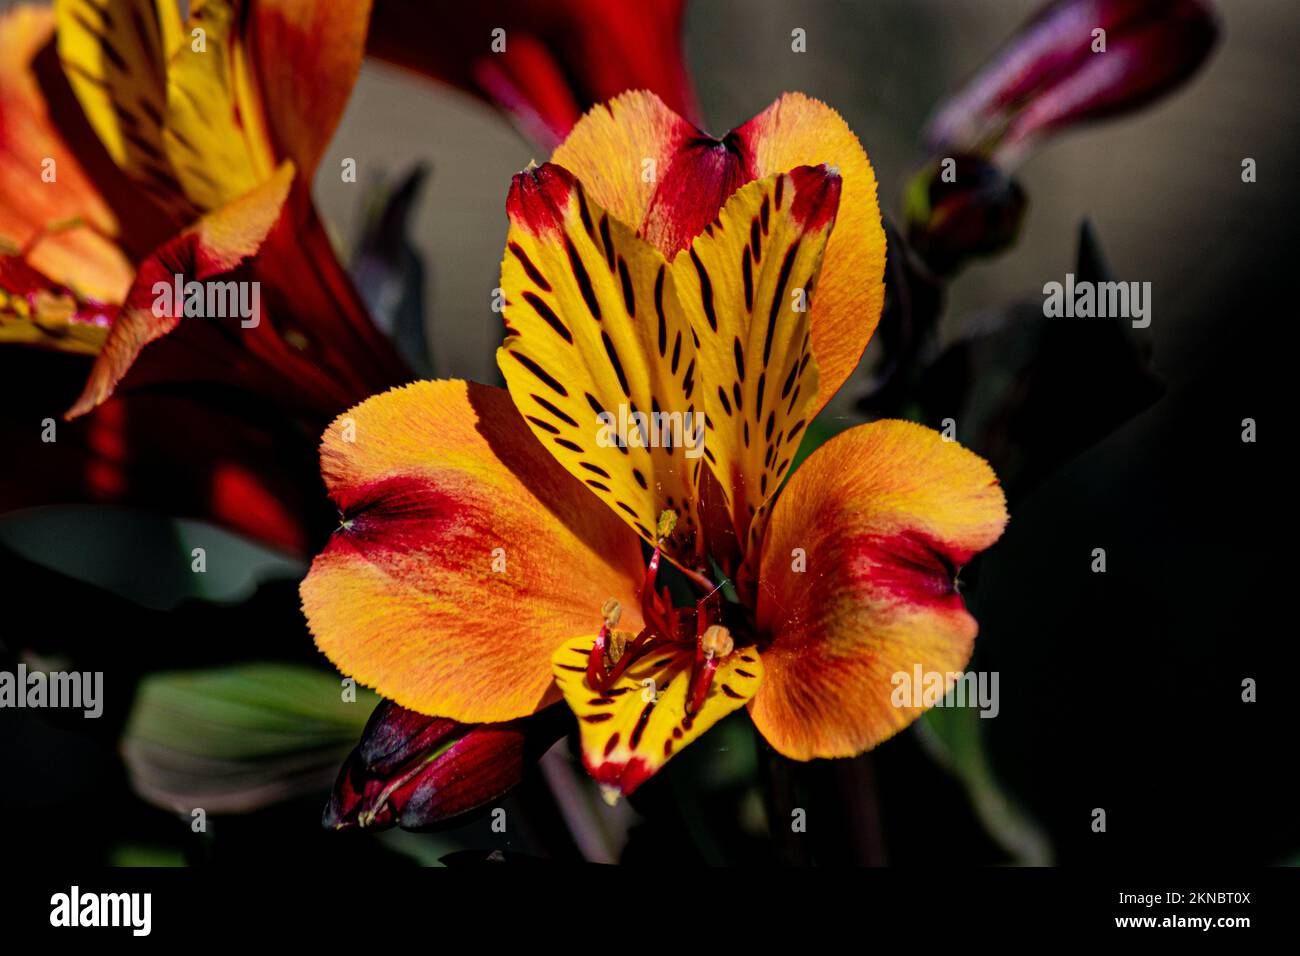 Astroemeria ou Lily of the Incas, une plante hébacée et robuste Banque D'Images